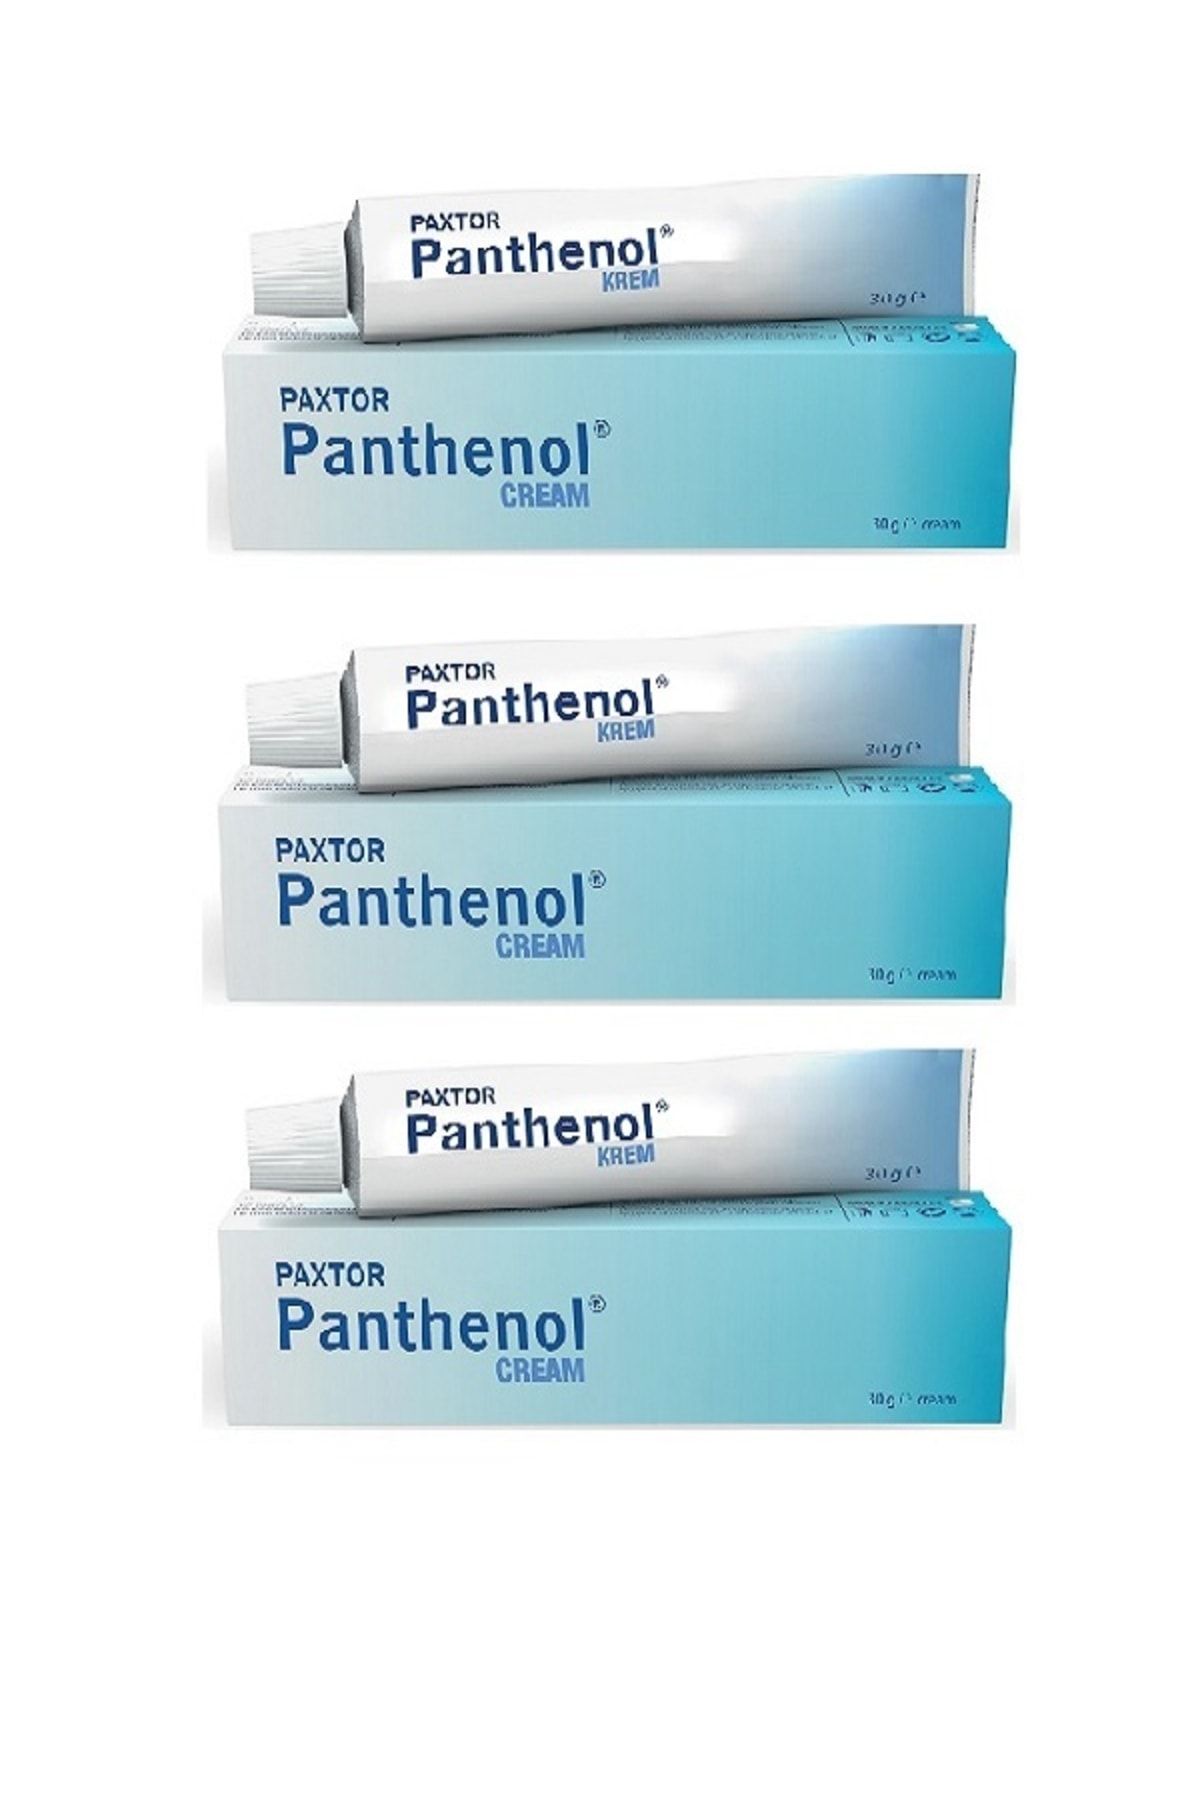 Panthenol Paxtor Krem 30 gr- 3 Adet